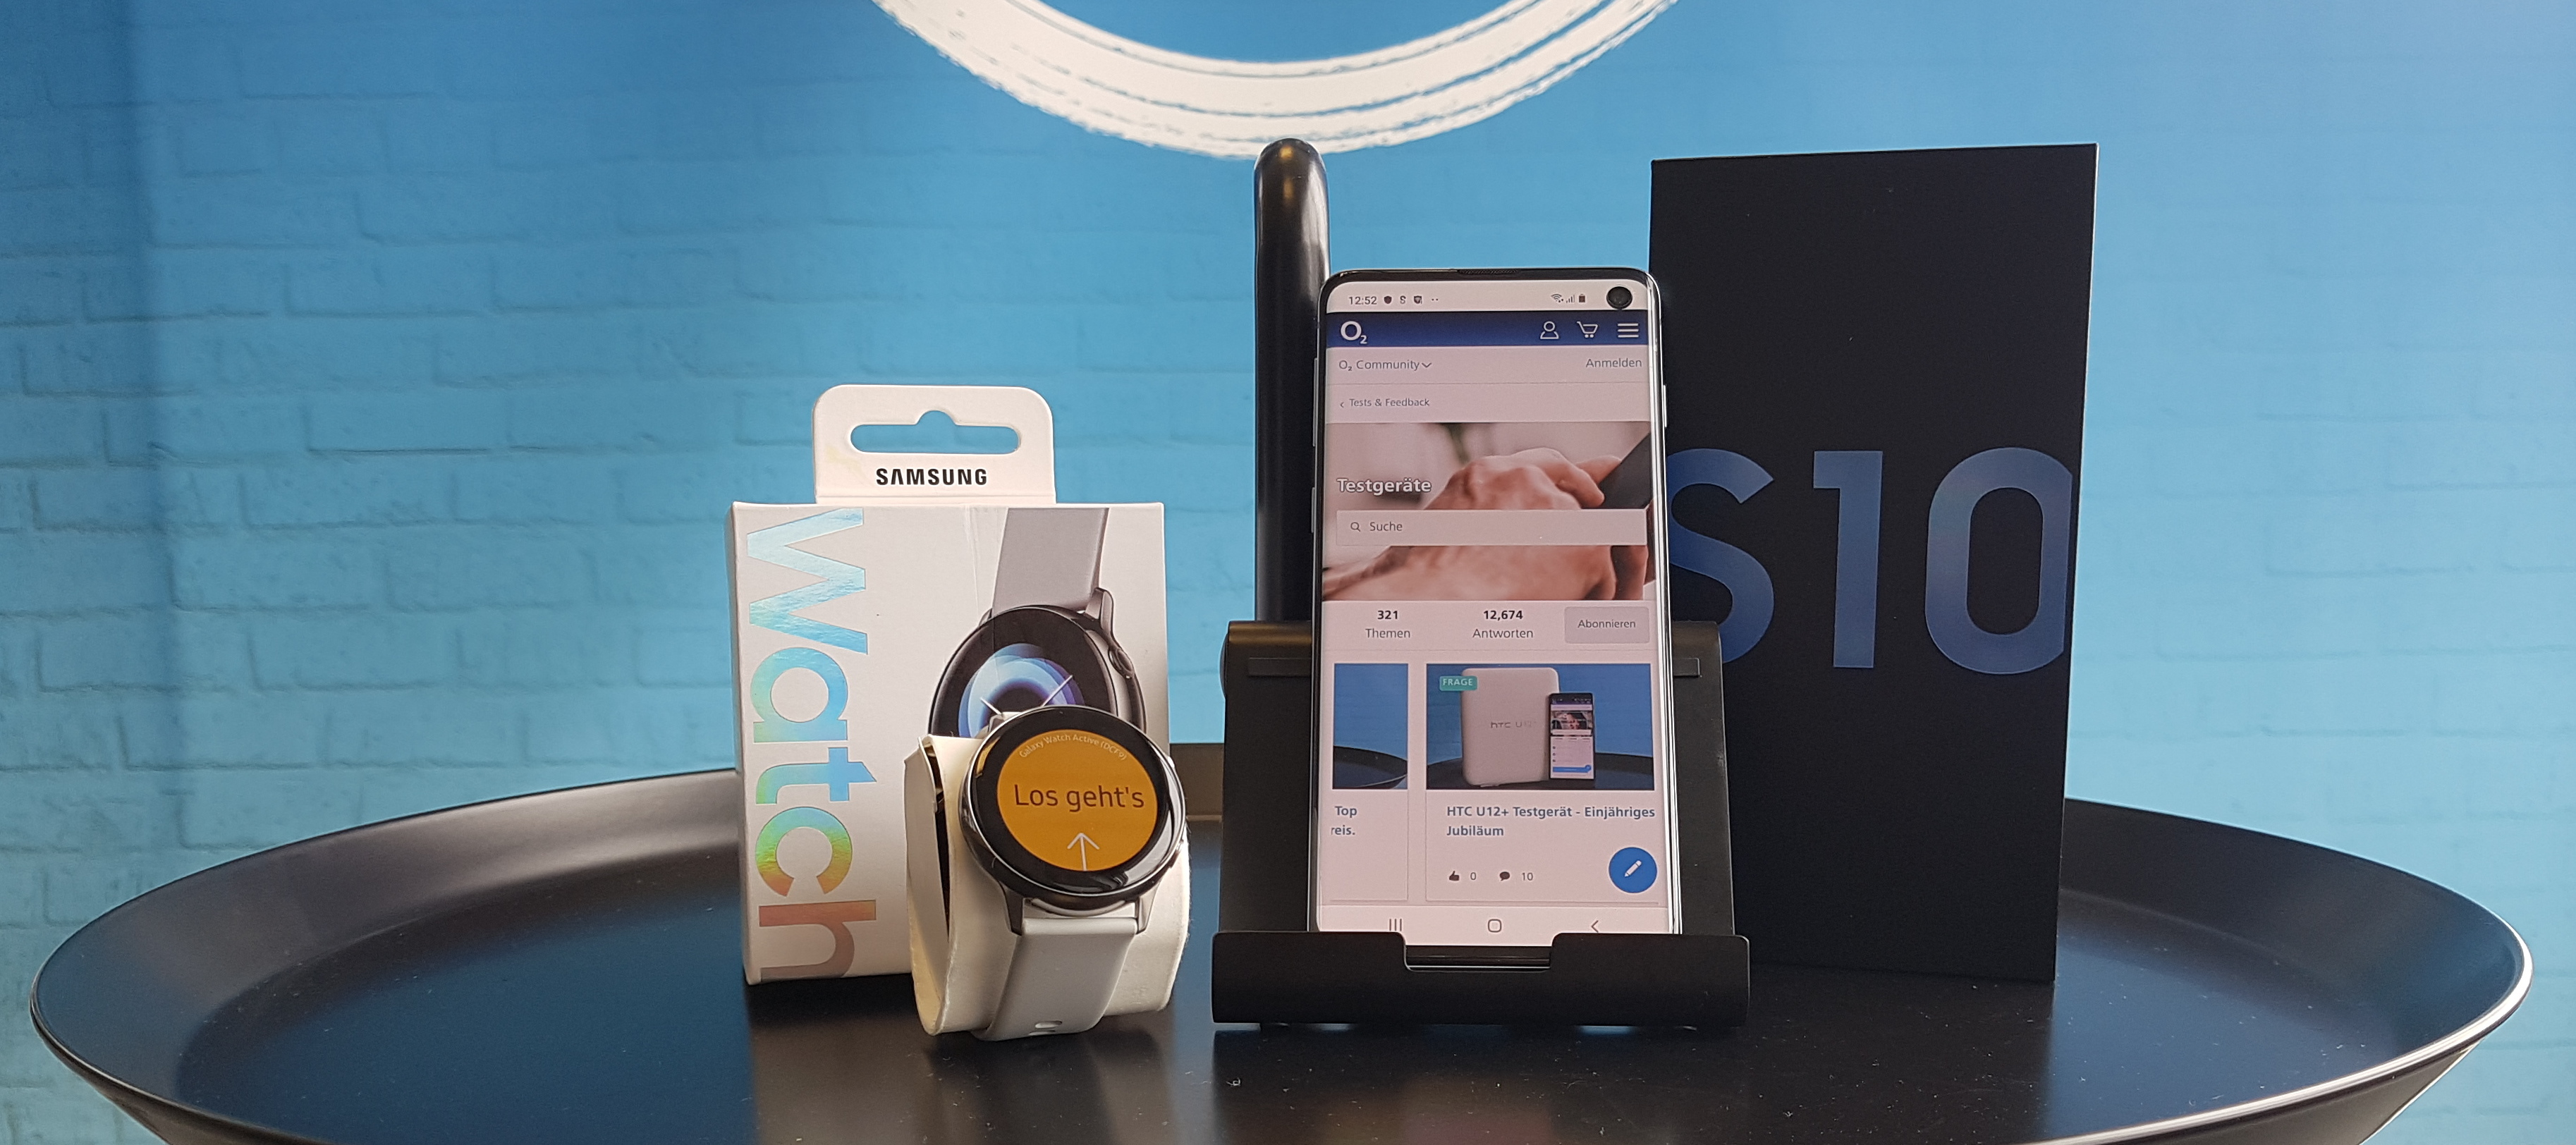 Samsung Galaxy Watch Active + Galaxy S10 Test-Bundle: Bewerben und Tester/in werden!